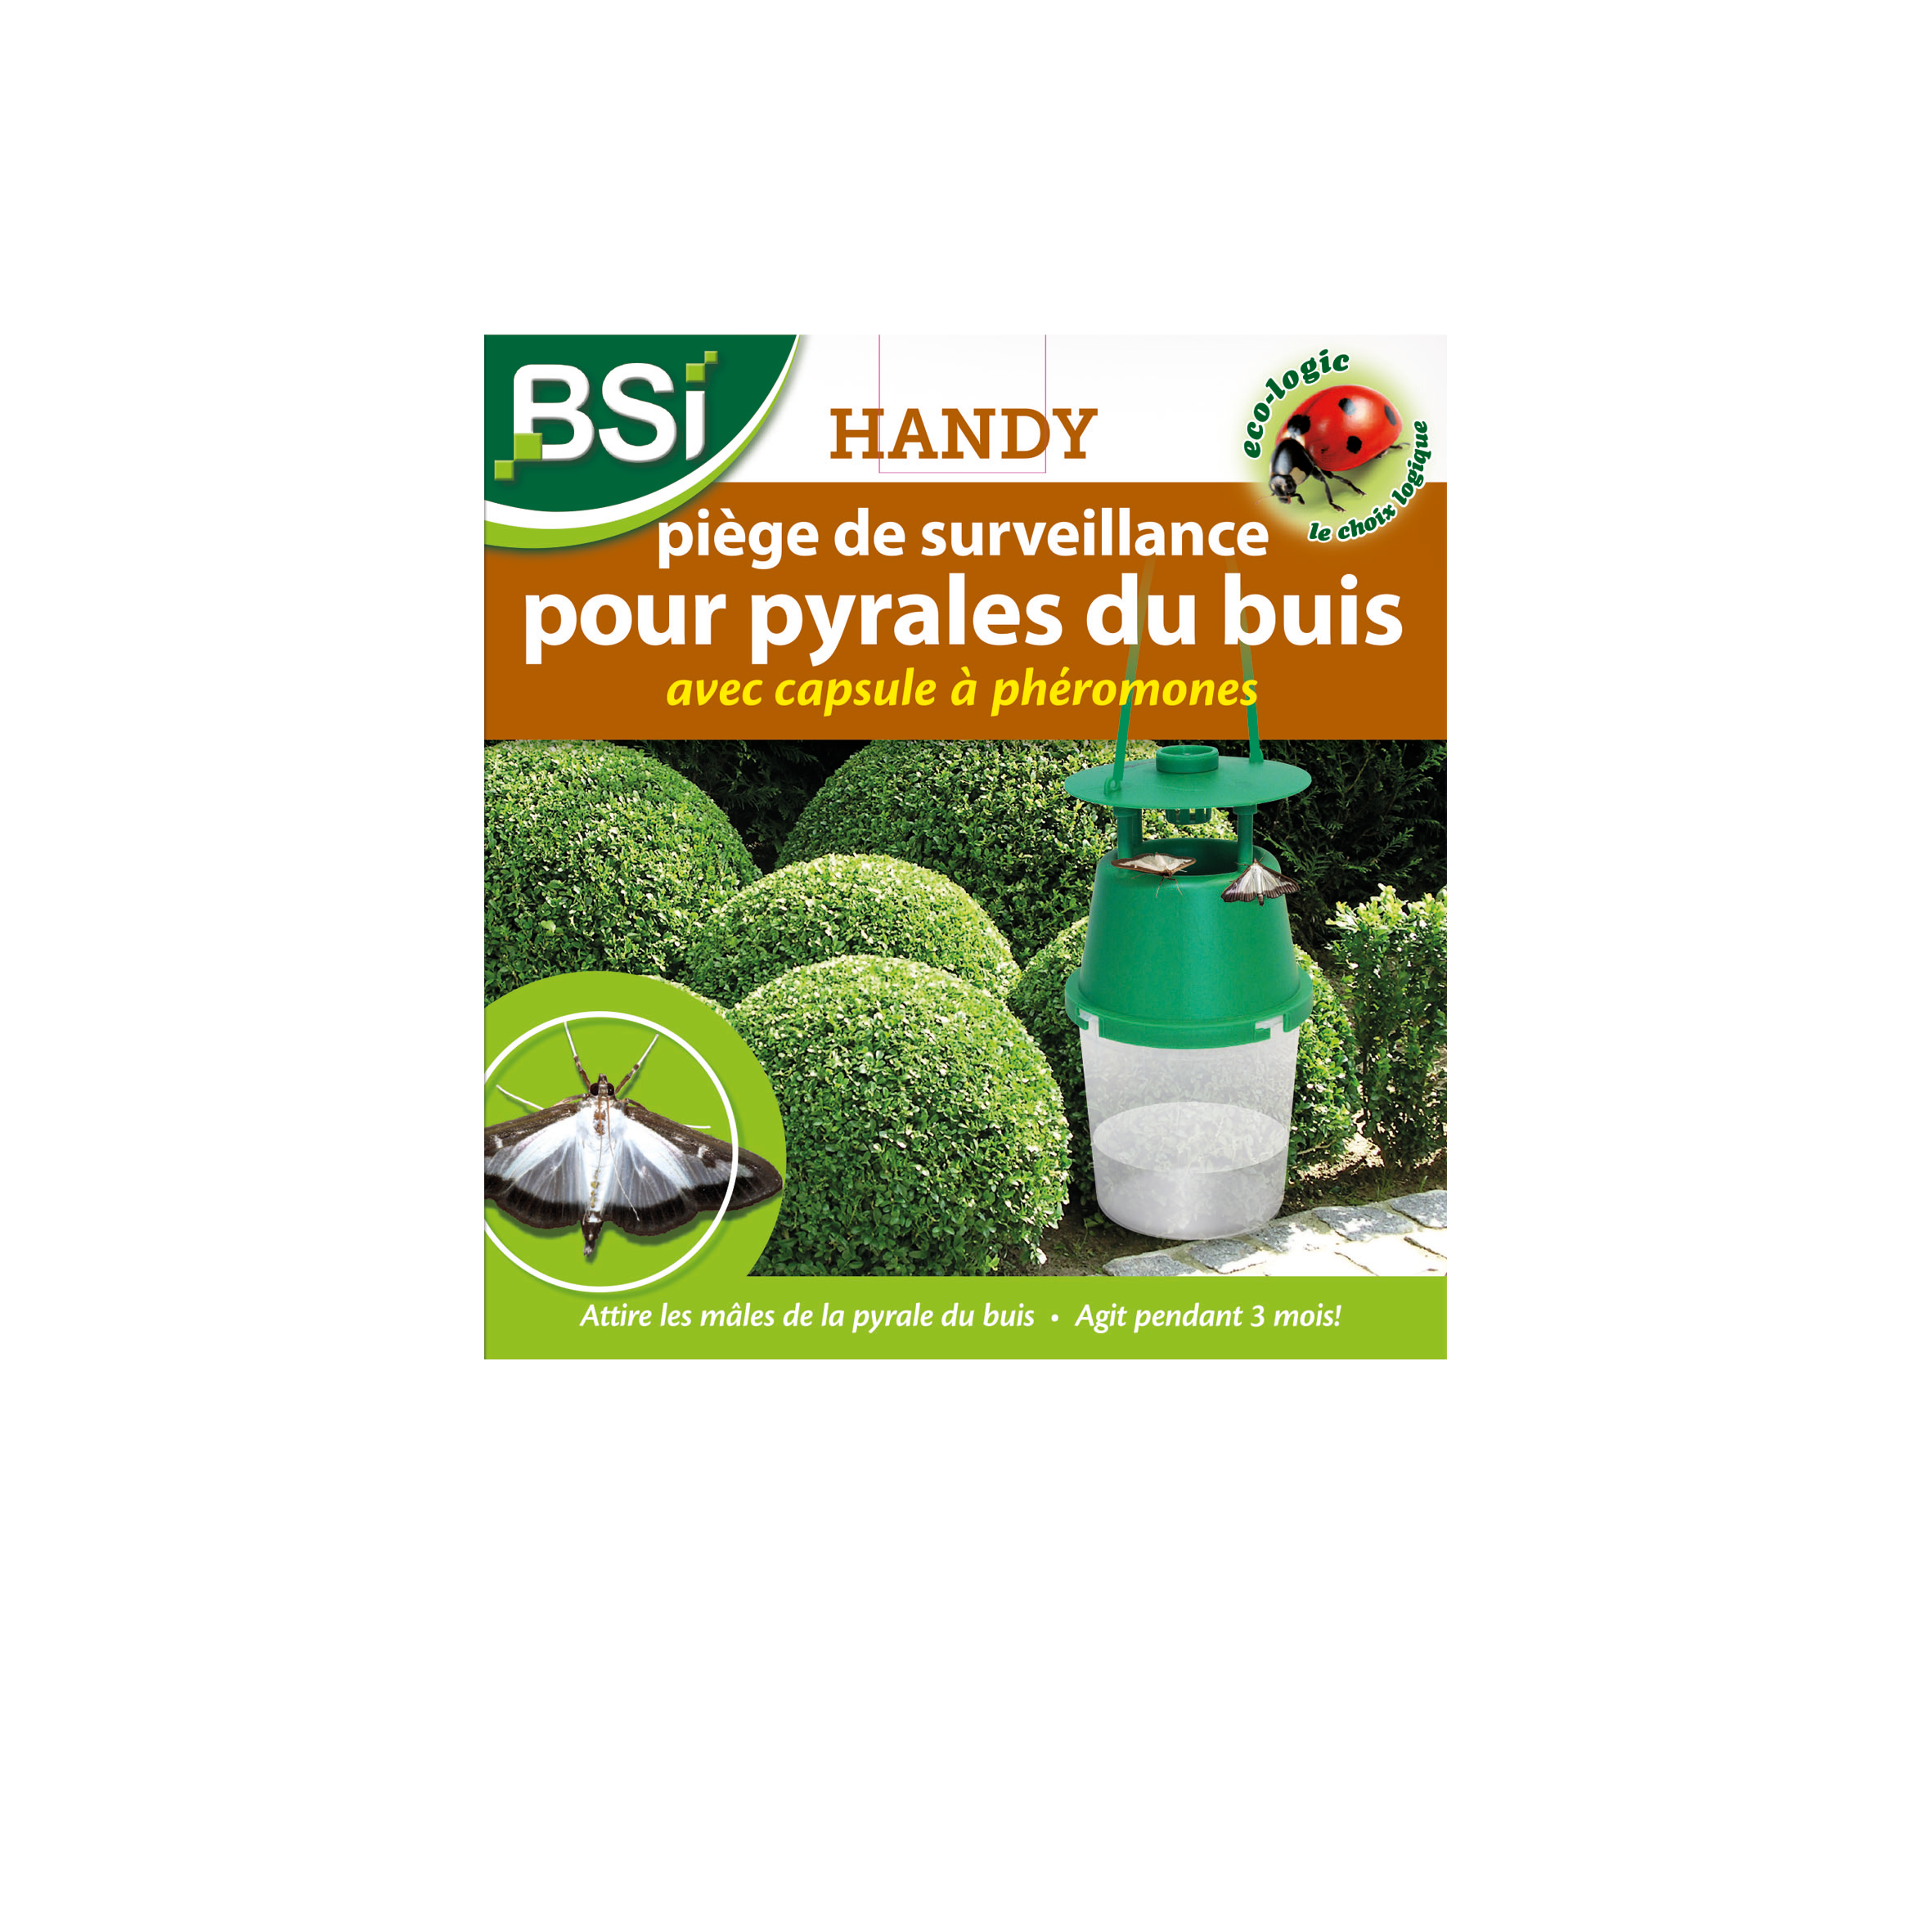 BSI Handy Piège à Phéromones Pyrale du Buis image